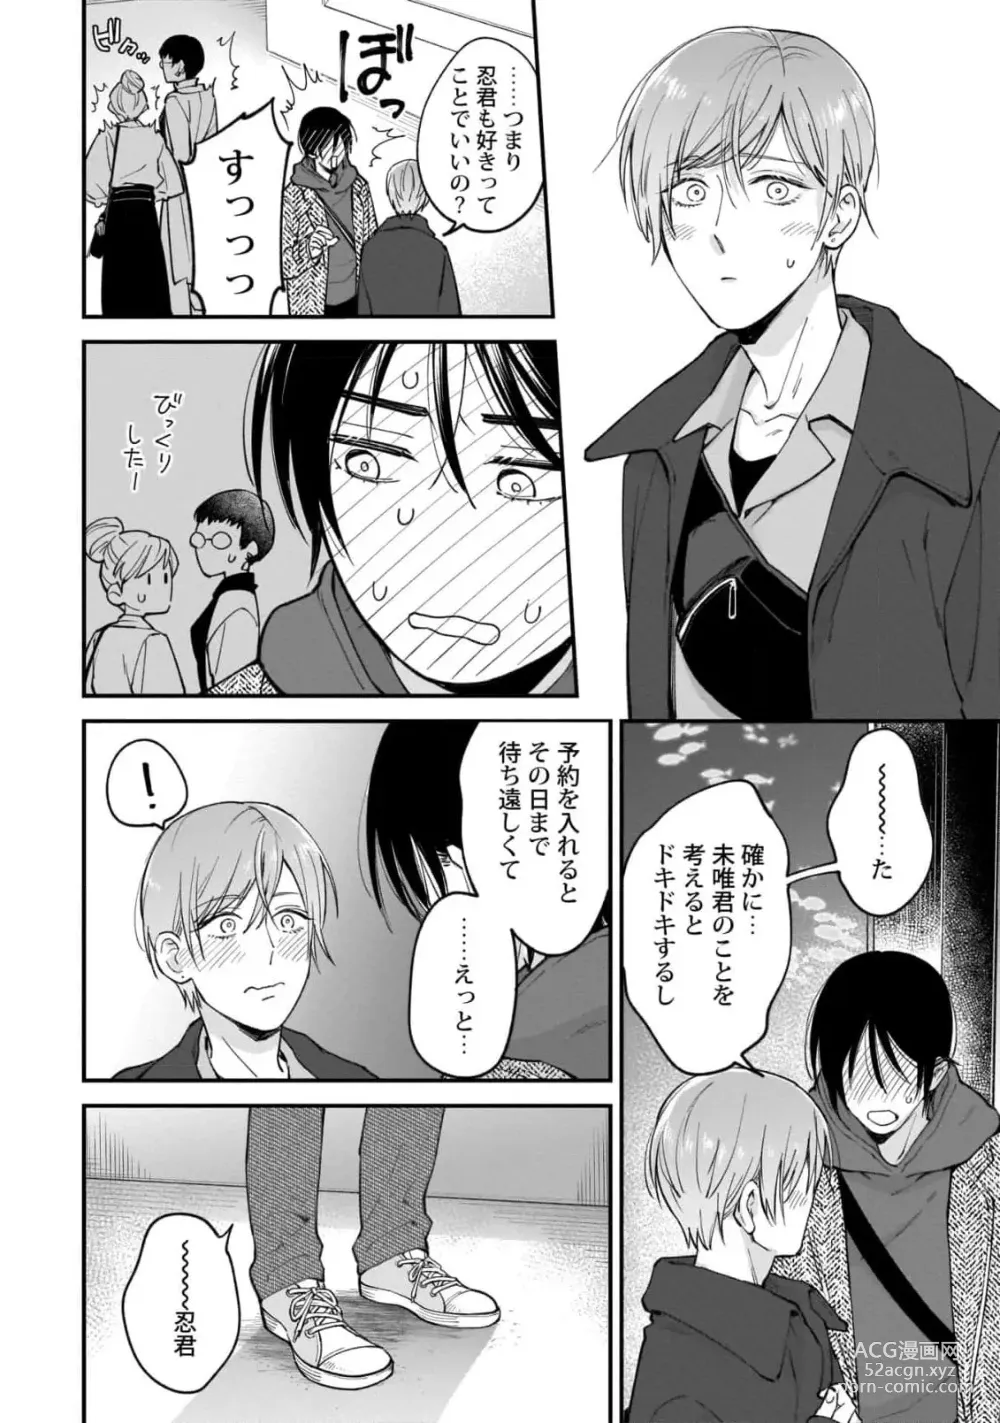 Page 158 of manga Fudanshi-kun wa Tameshitai